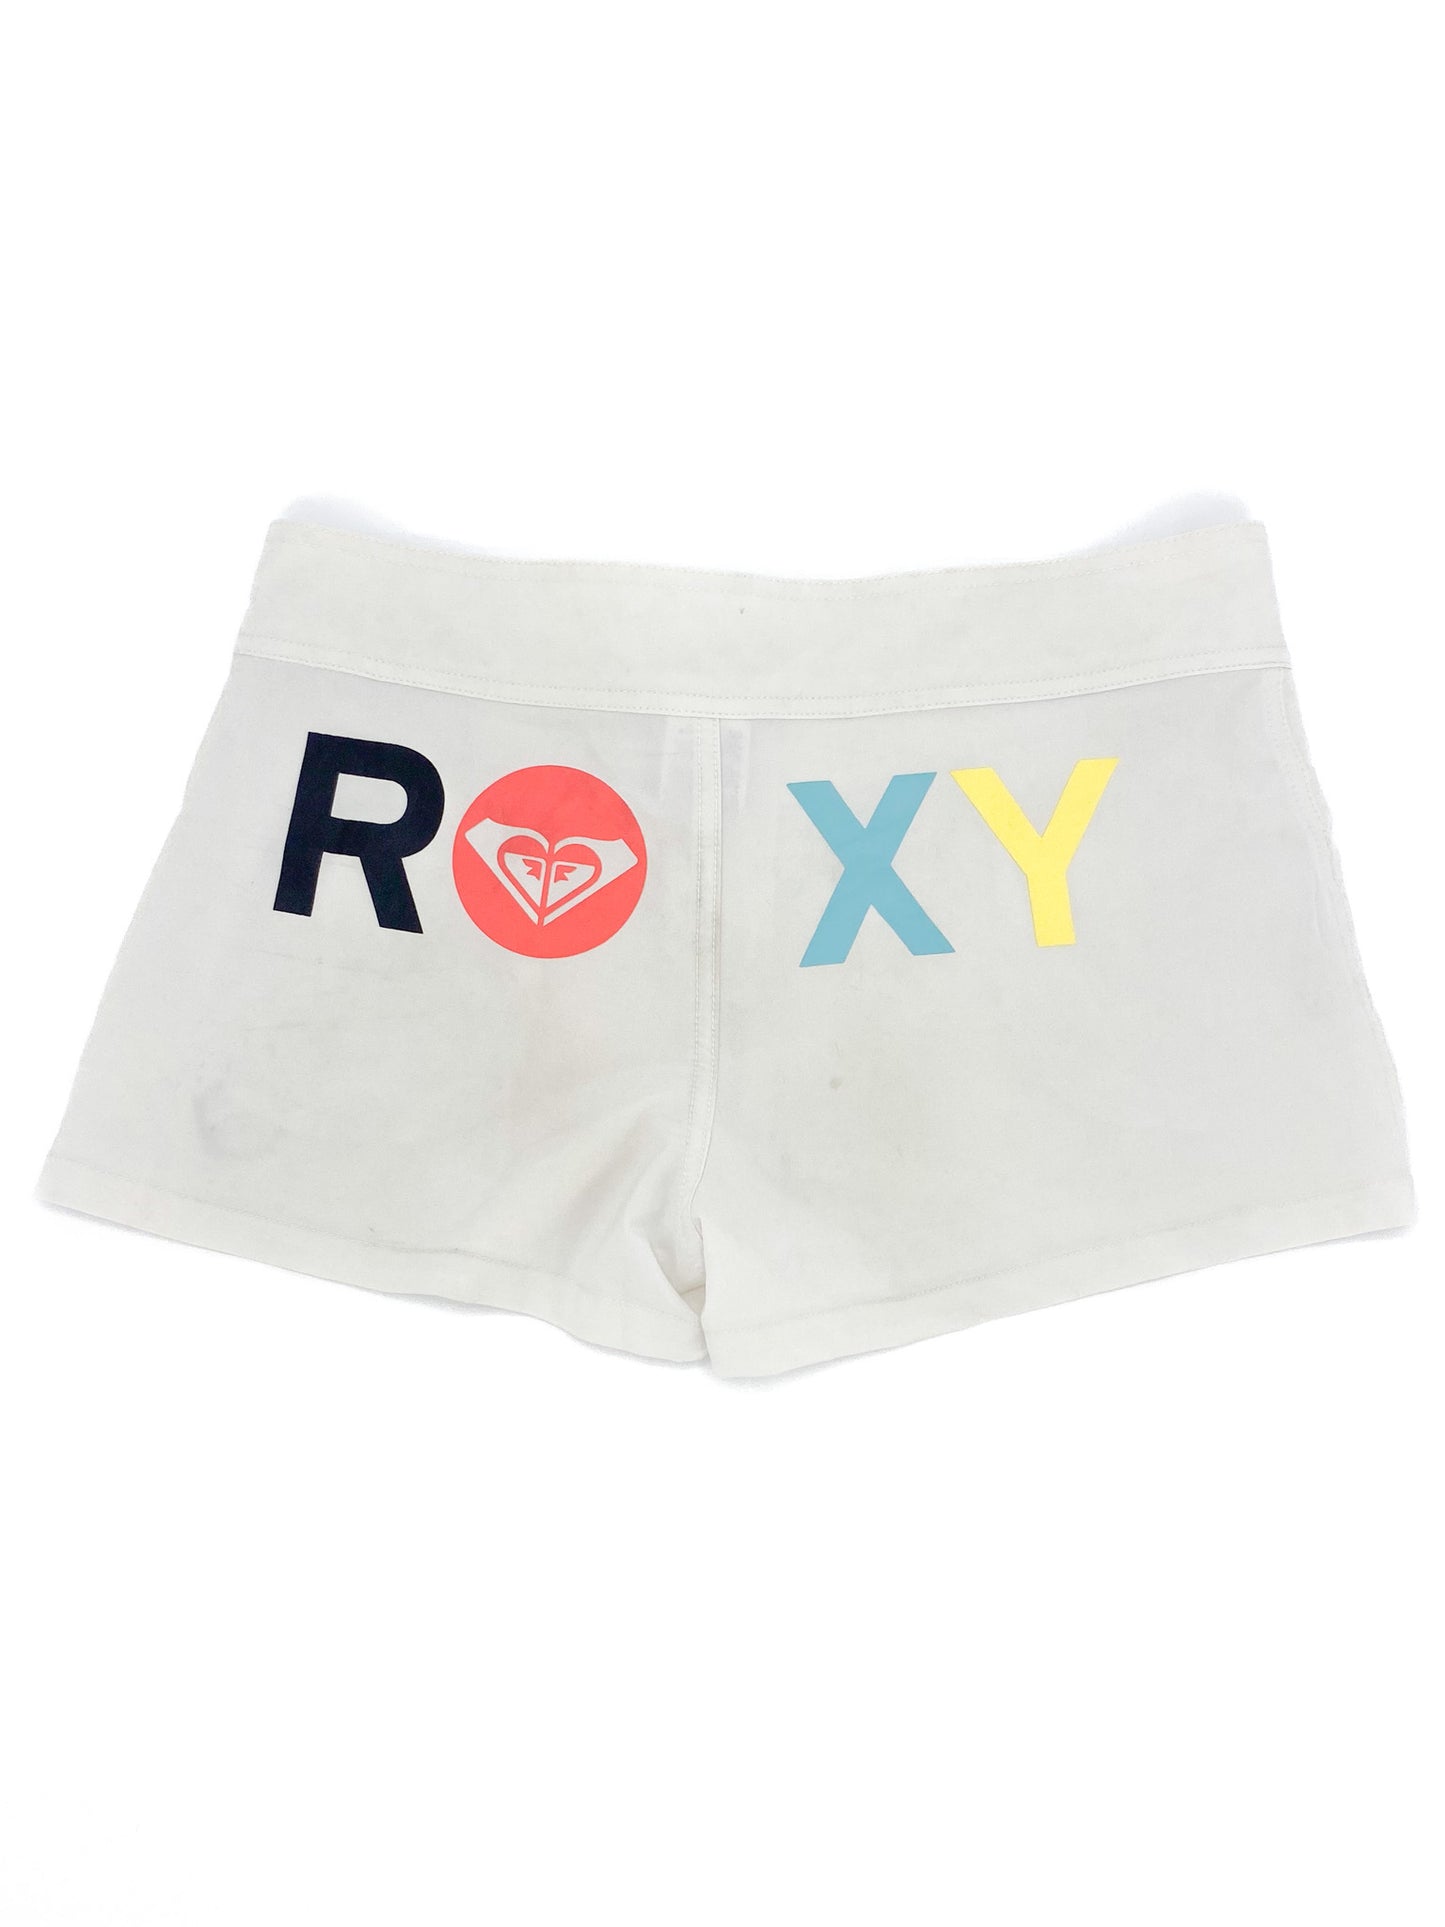 Vintage 00's White Roxy Booty Shorts  - S